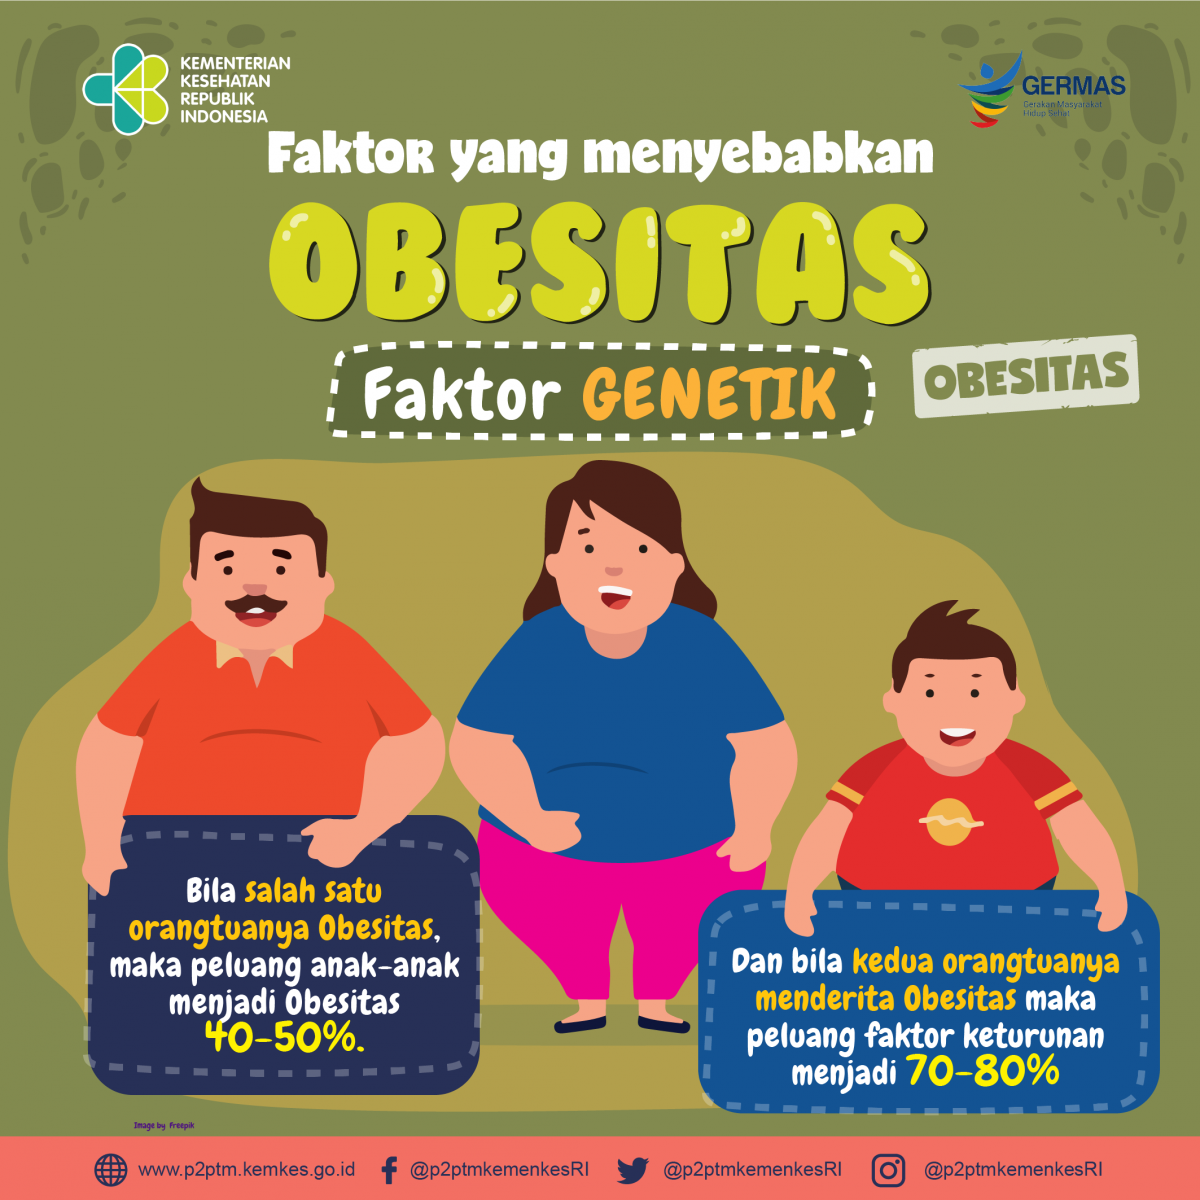 Faktor yang menyebabkan Obesitas salah satunya adalah faktor genetik